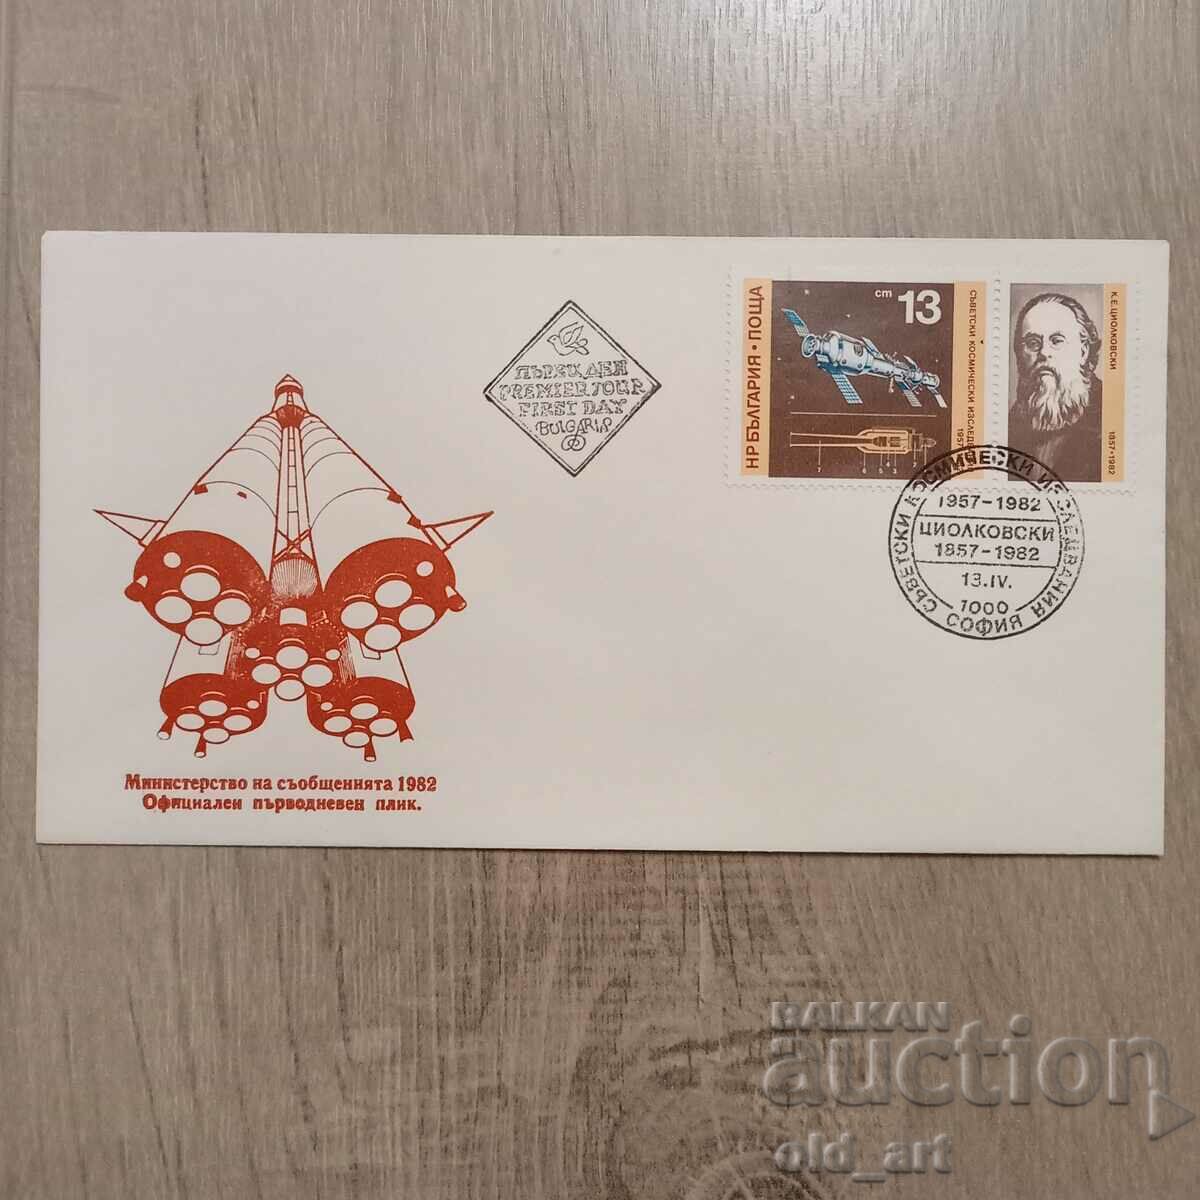 Ταχυδρομικός φάκελος - Σοβιετική διαστημική έρευνα